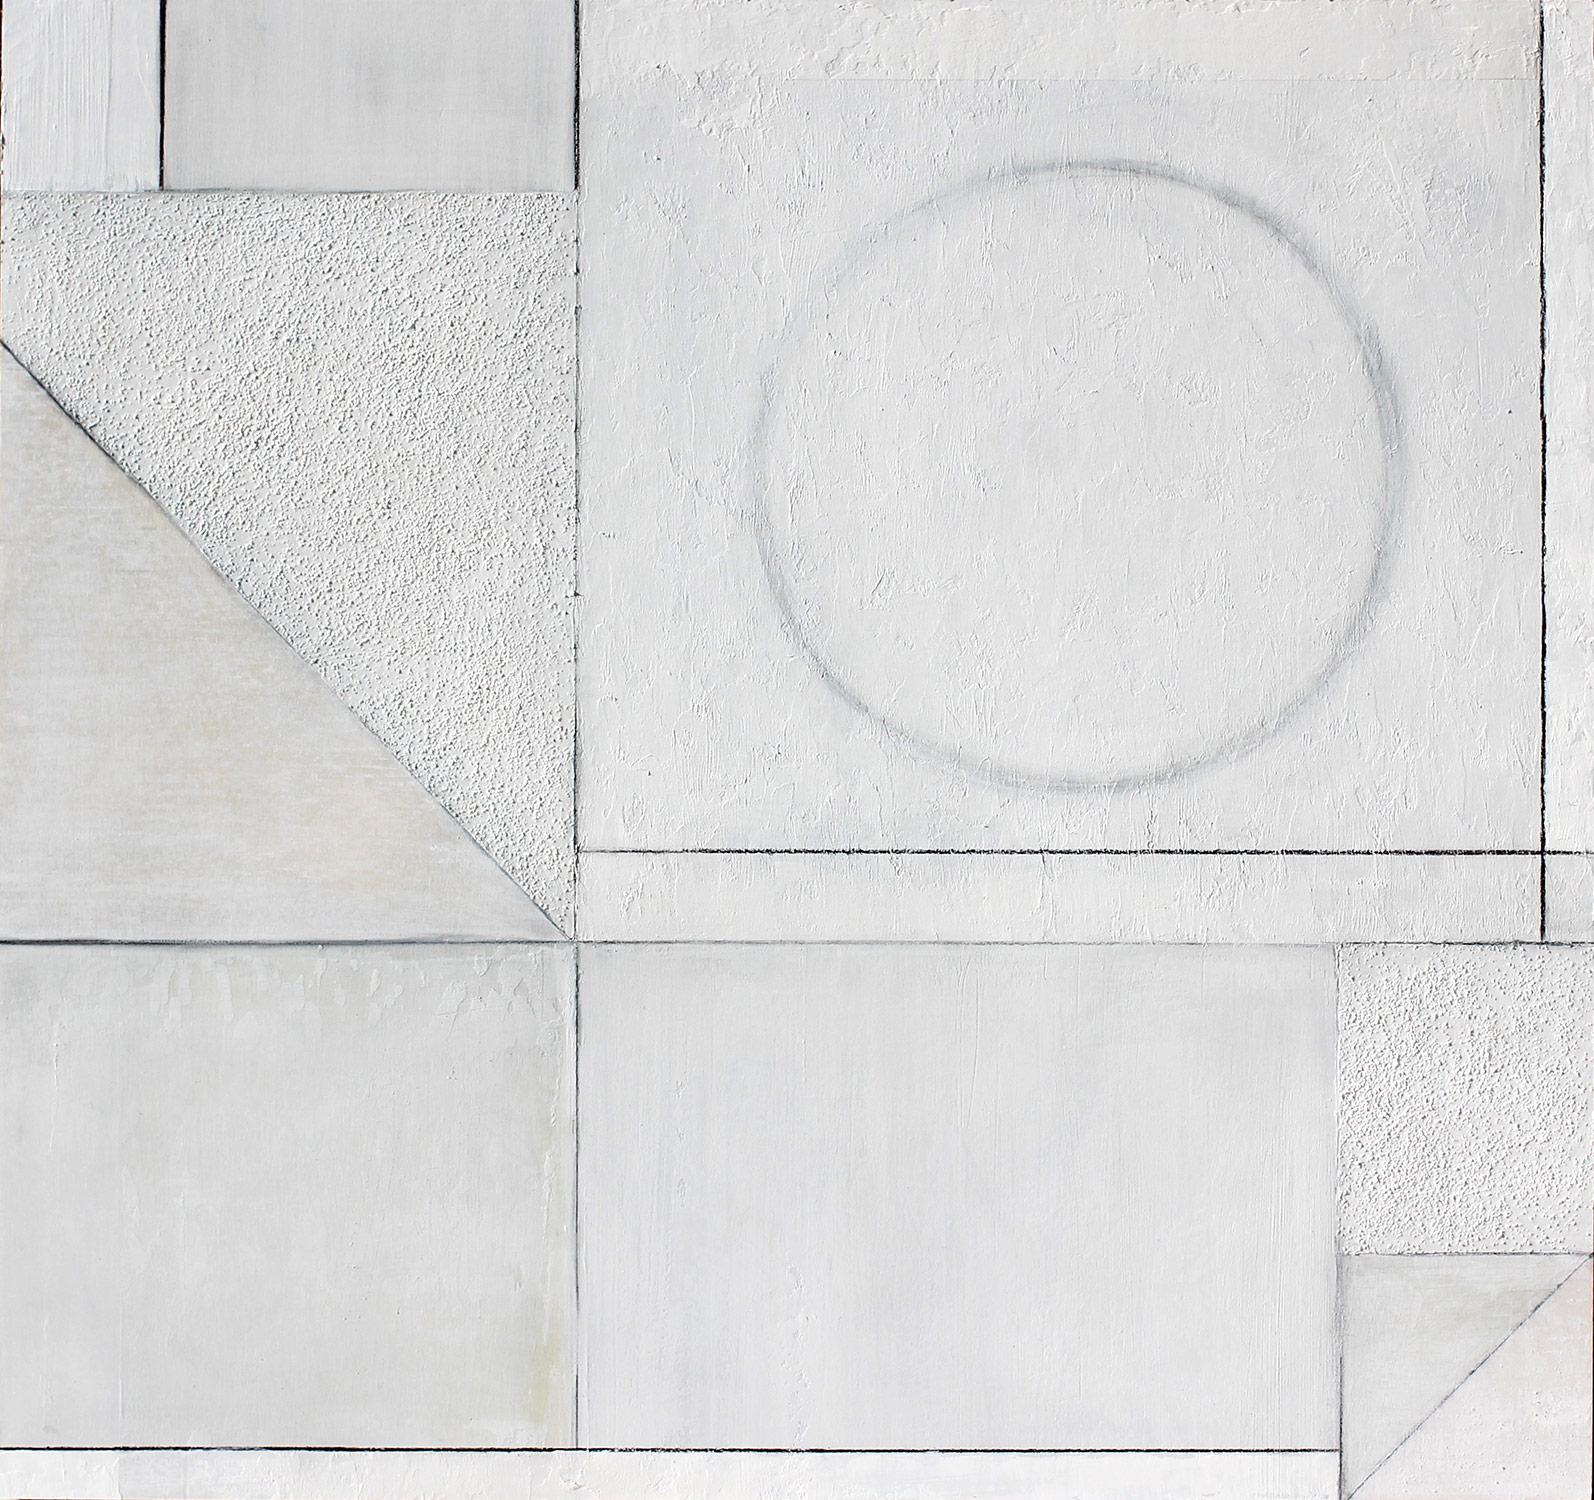 Abstract Painting Christie Owen - "Geometric 3076" Composition abstraite en couches de médias mixtes sur panneau de bouleau baltique